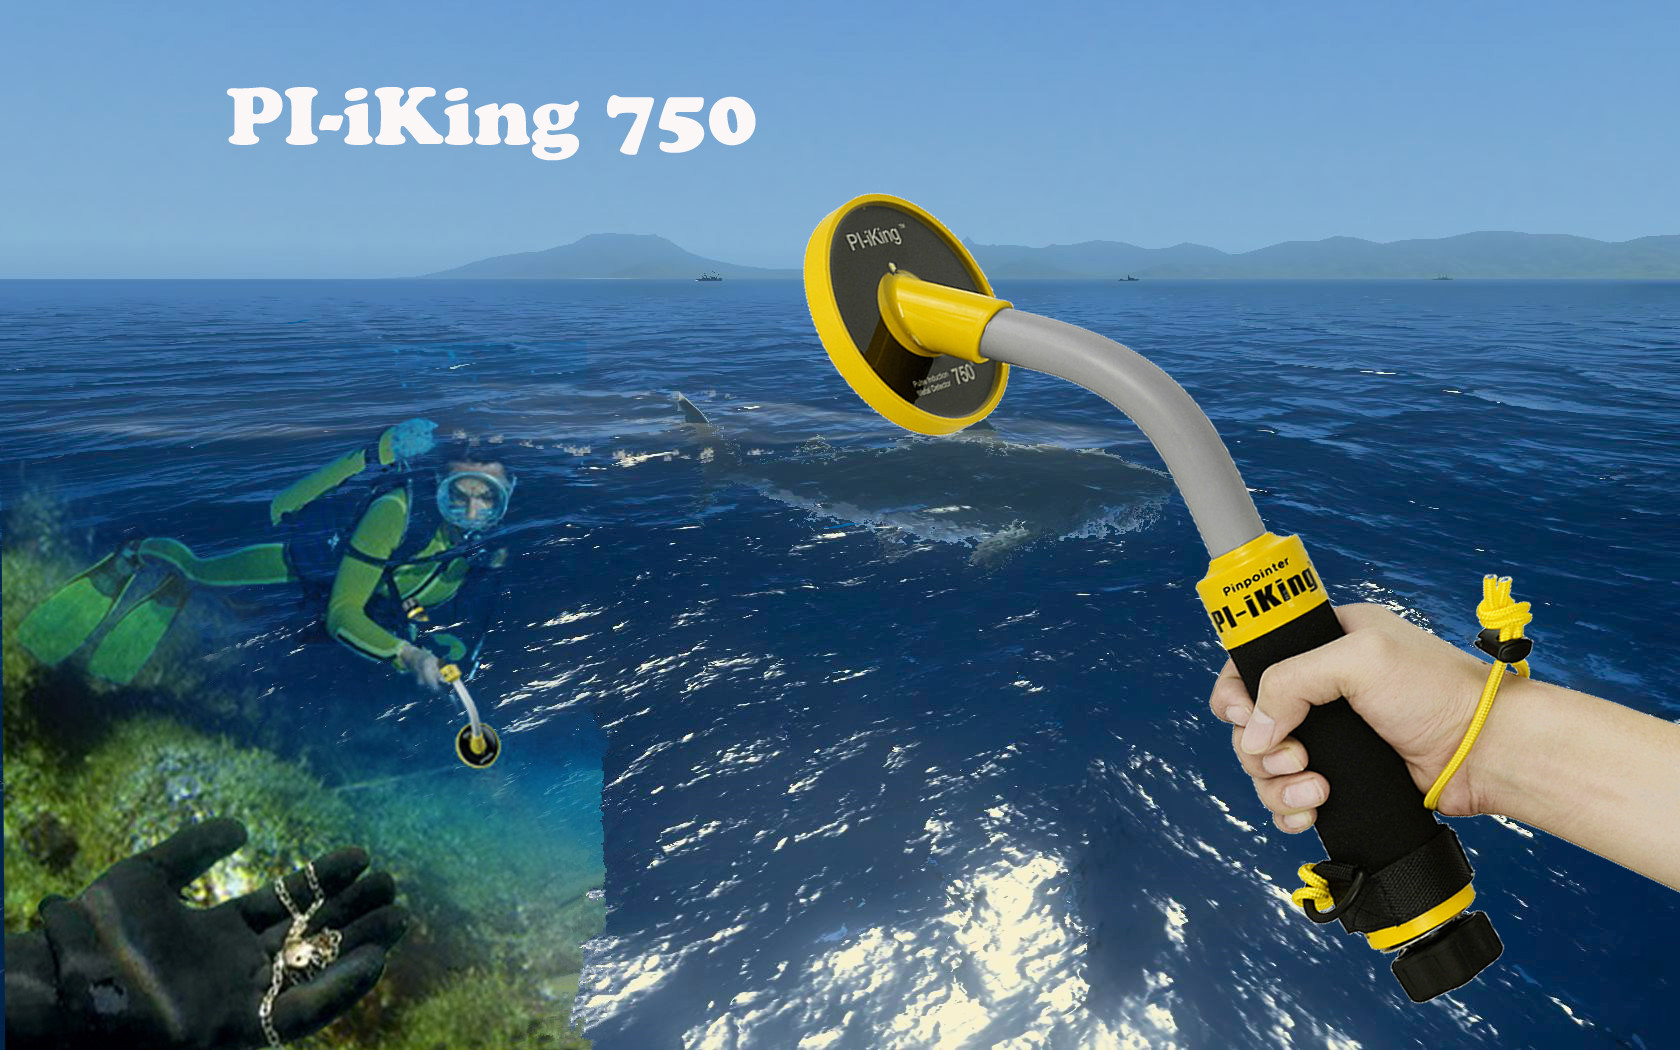 frete grátis 2018 novo Pinpoint Fábrica preço de atacado PI-IKing 750 Waterproof detector de metal detector de ouro de mão subaquática